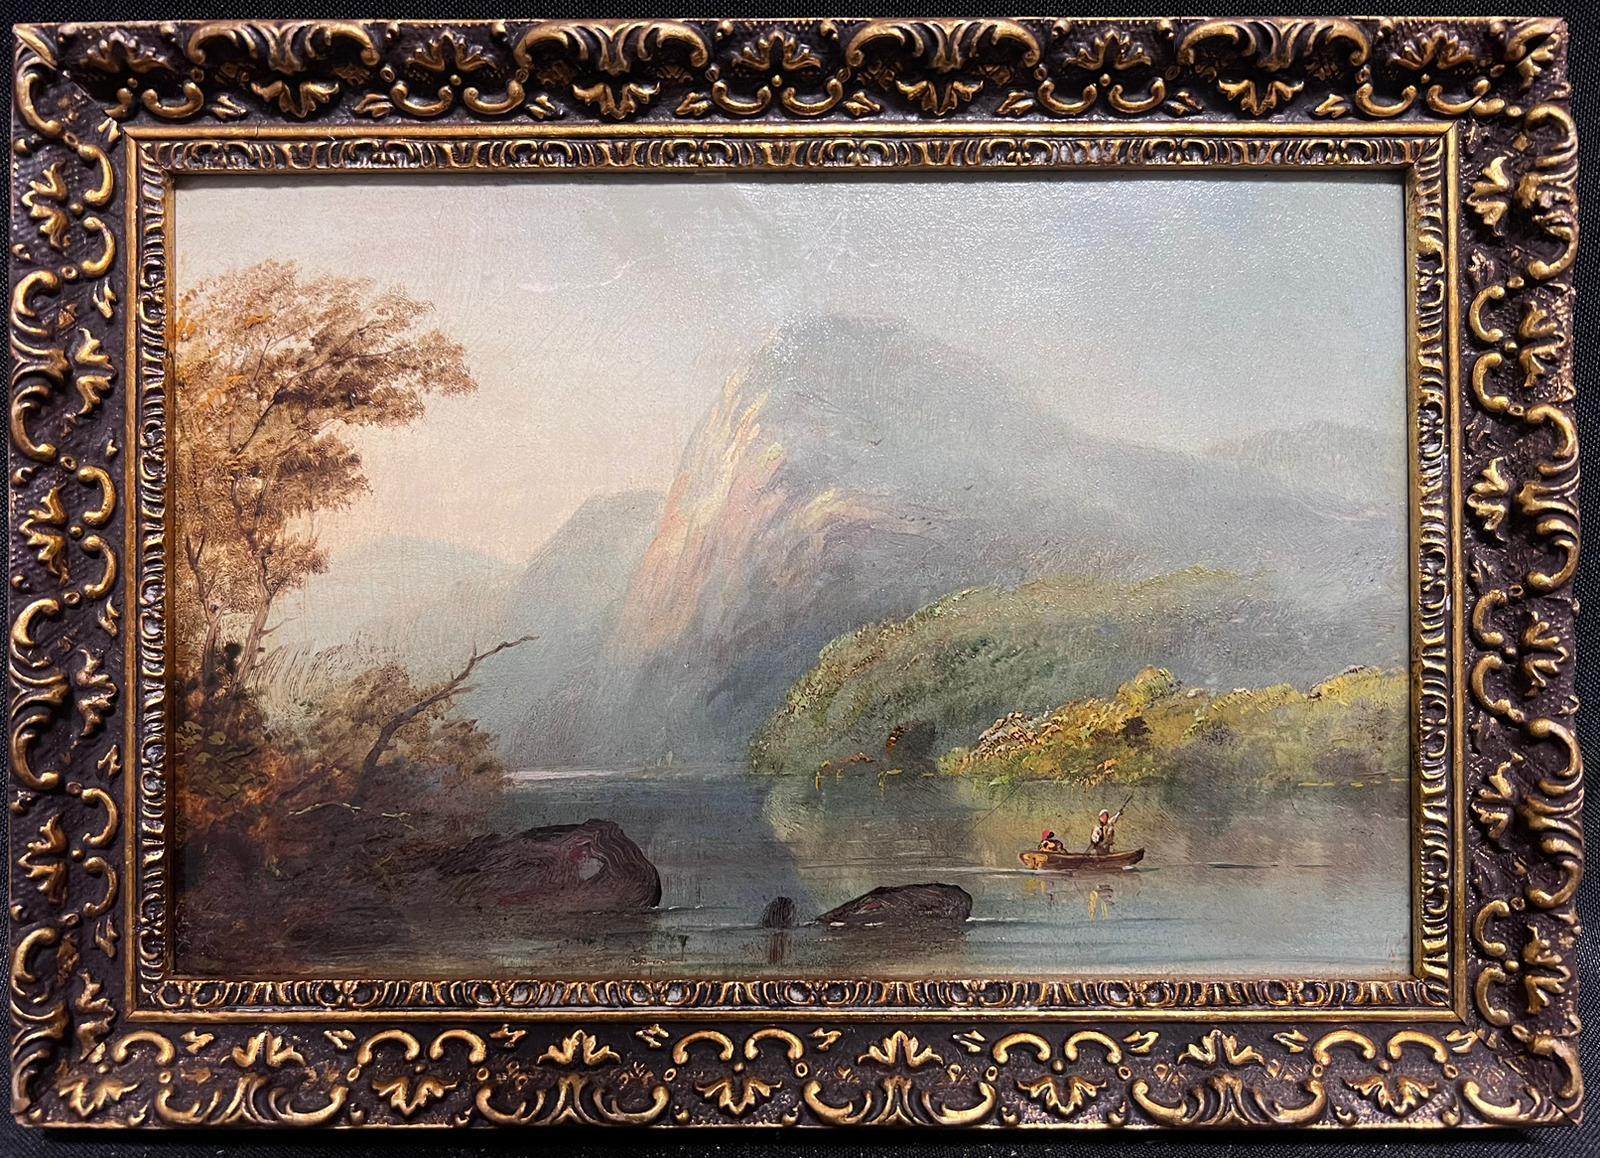 Landscape Painting Antique Scottish School - Peinture à l'huile écossaise du 19e siècle représentant des rameurs dans une scène de Loch atmosphérique